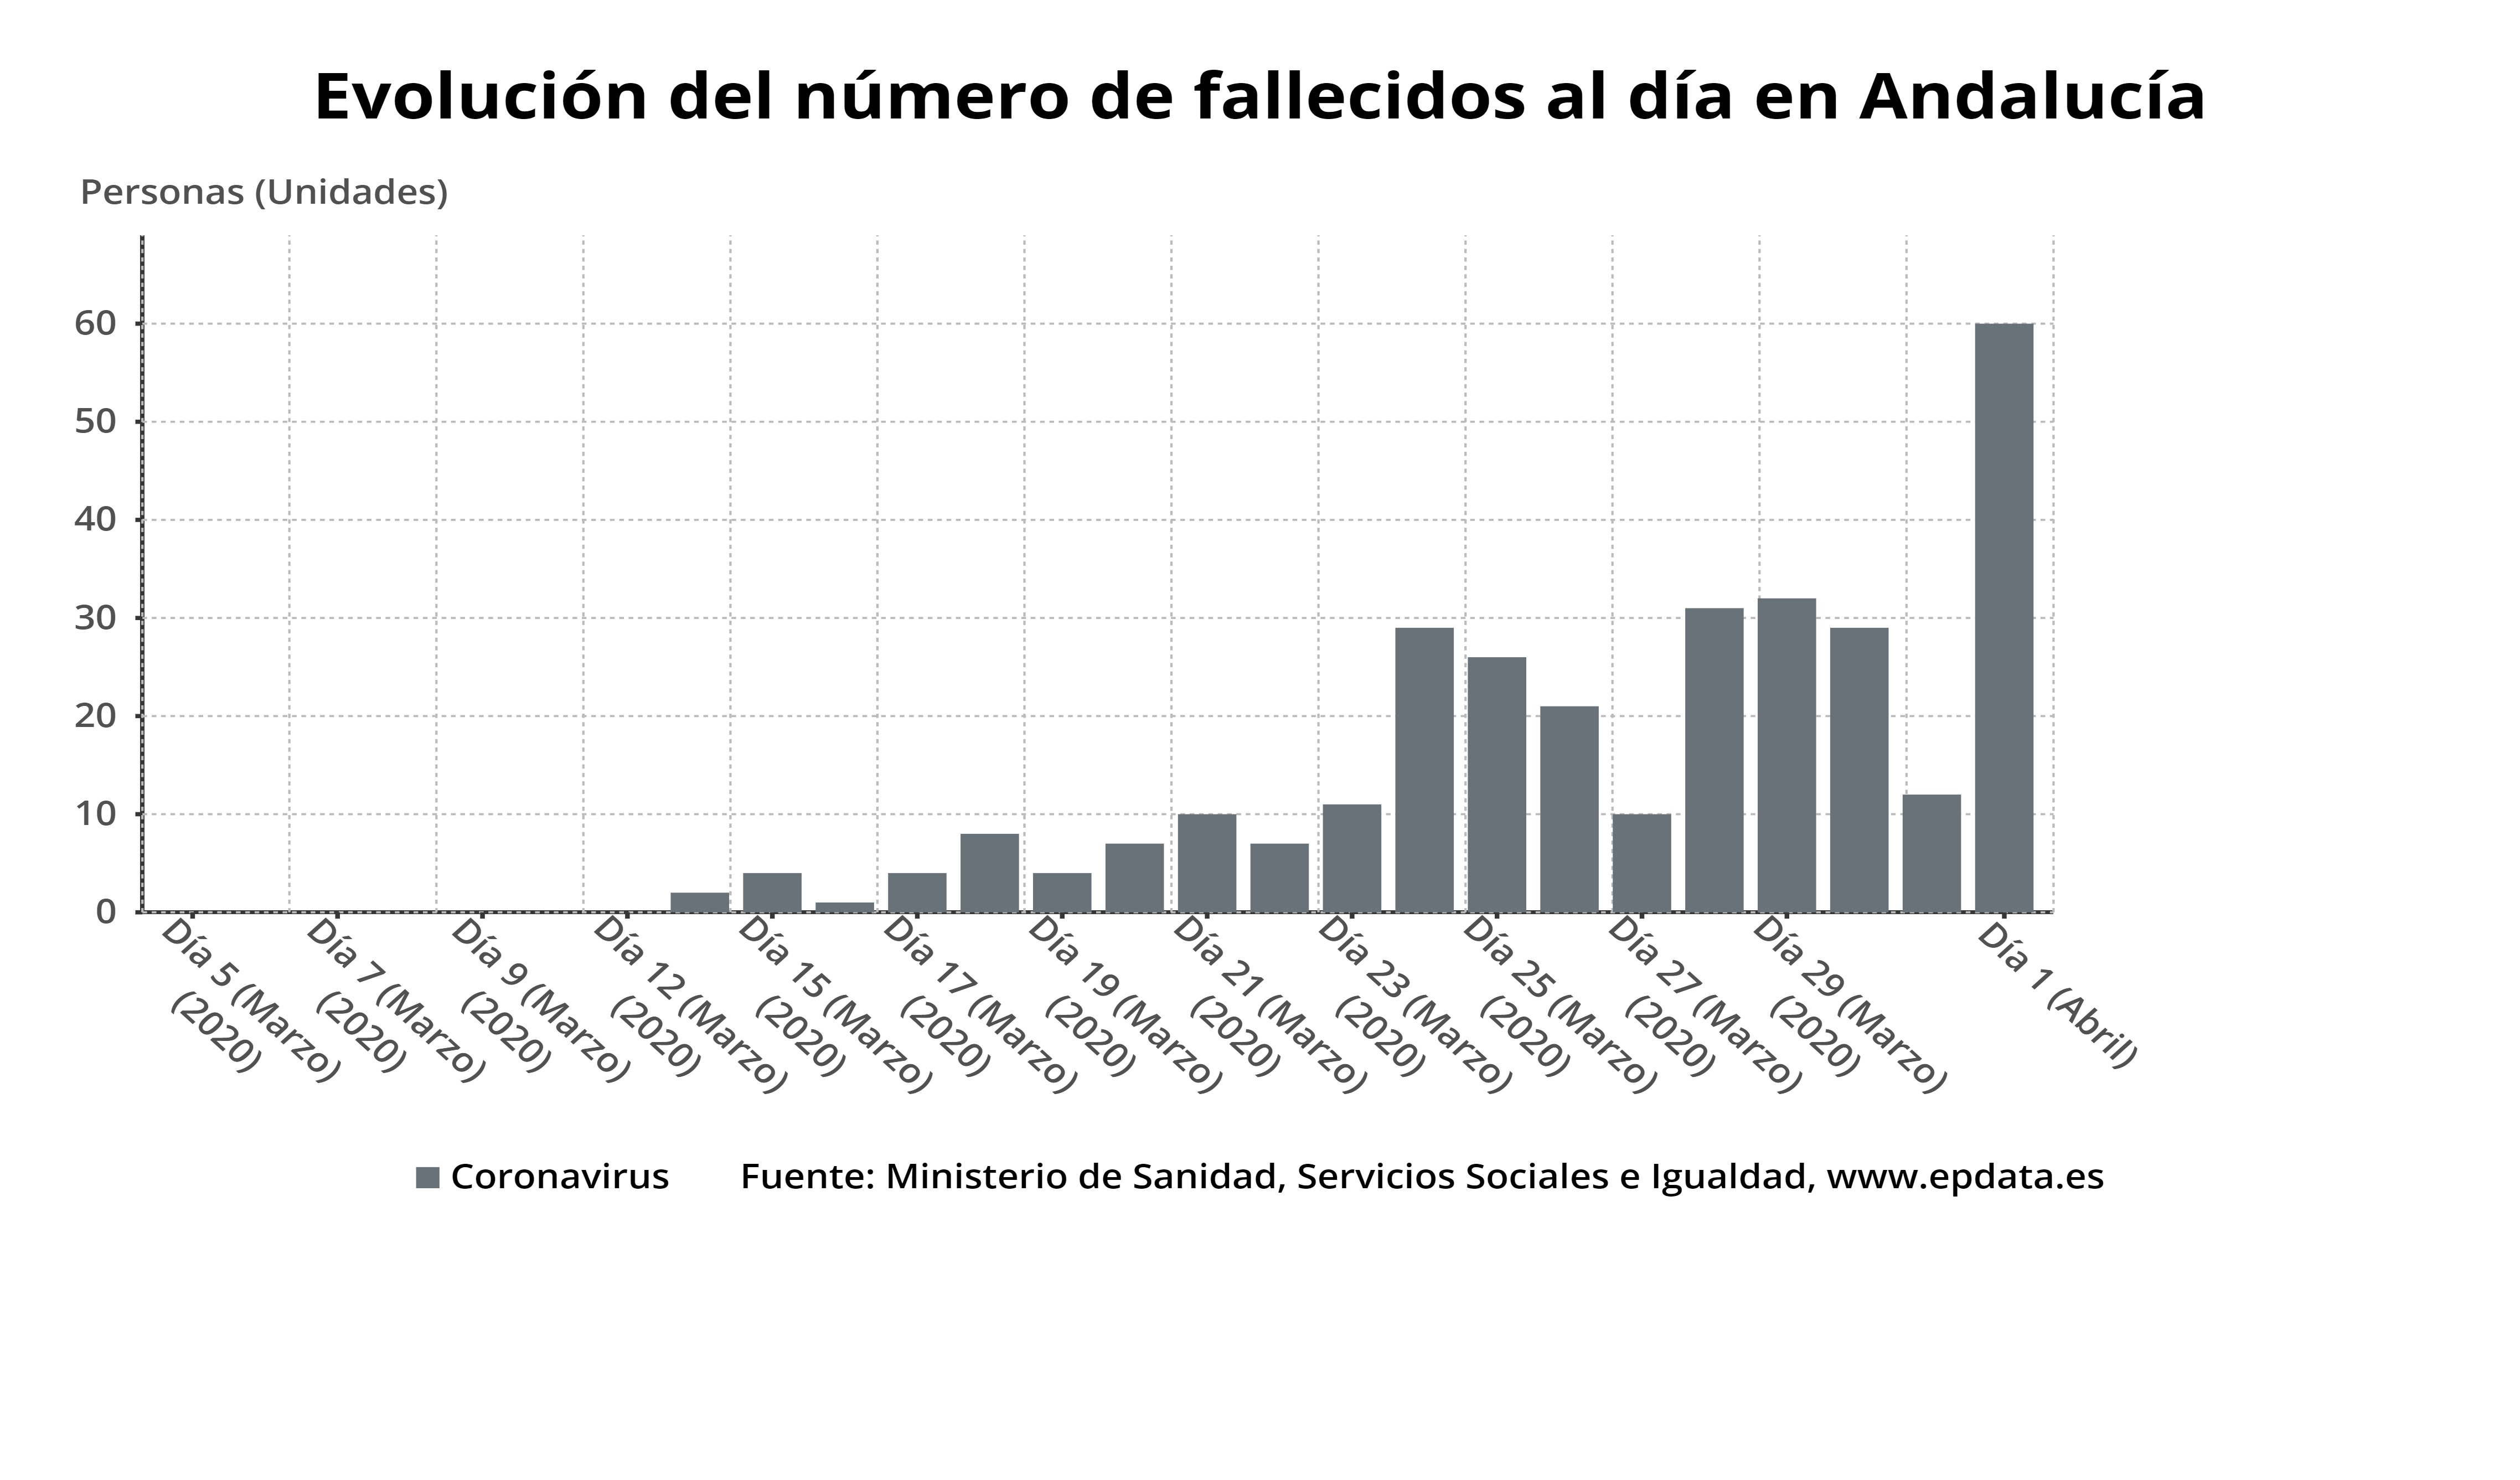 Evolución del número de fallecidos en Andalucía por coronavirus a 1 de abril de 2020